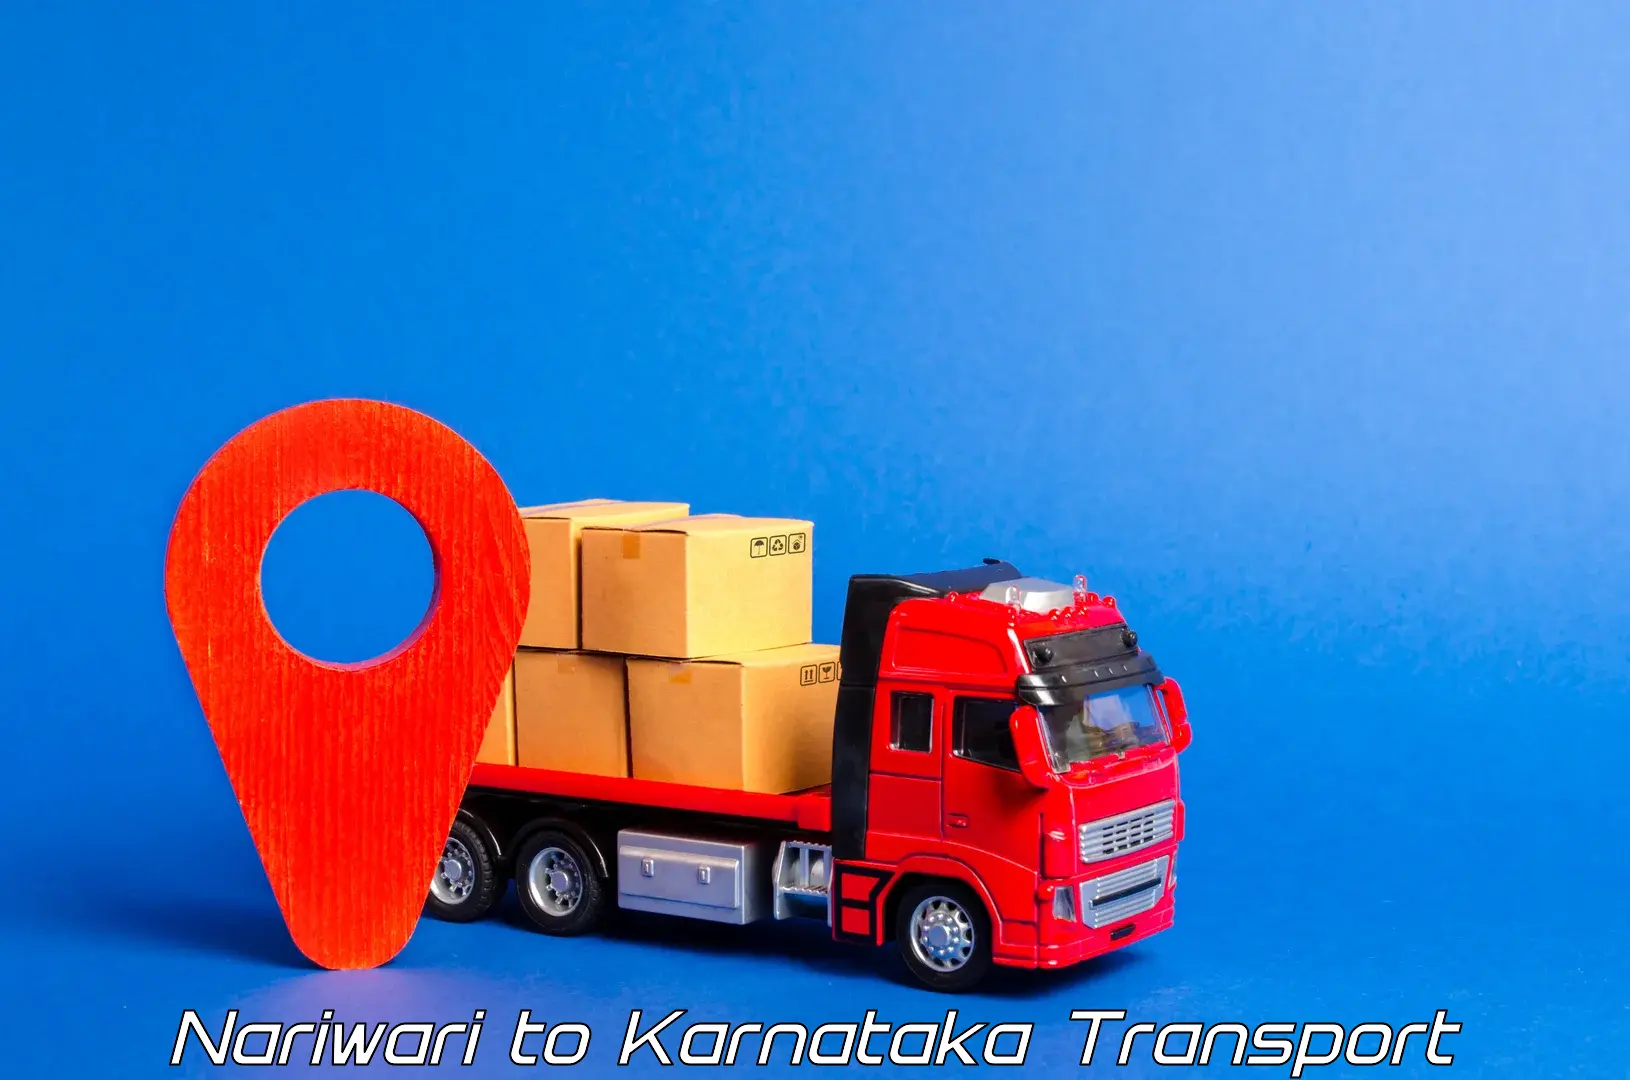 Shipping partner Nariwari to Kanjarakatte